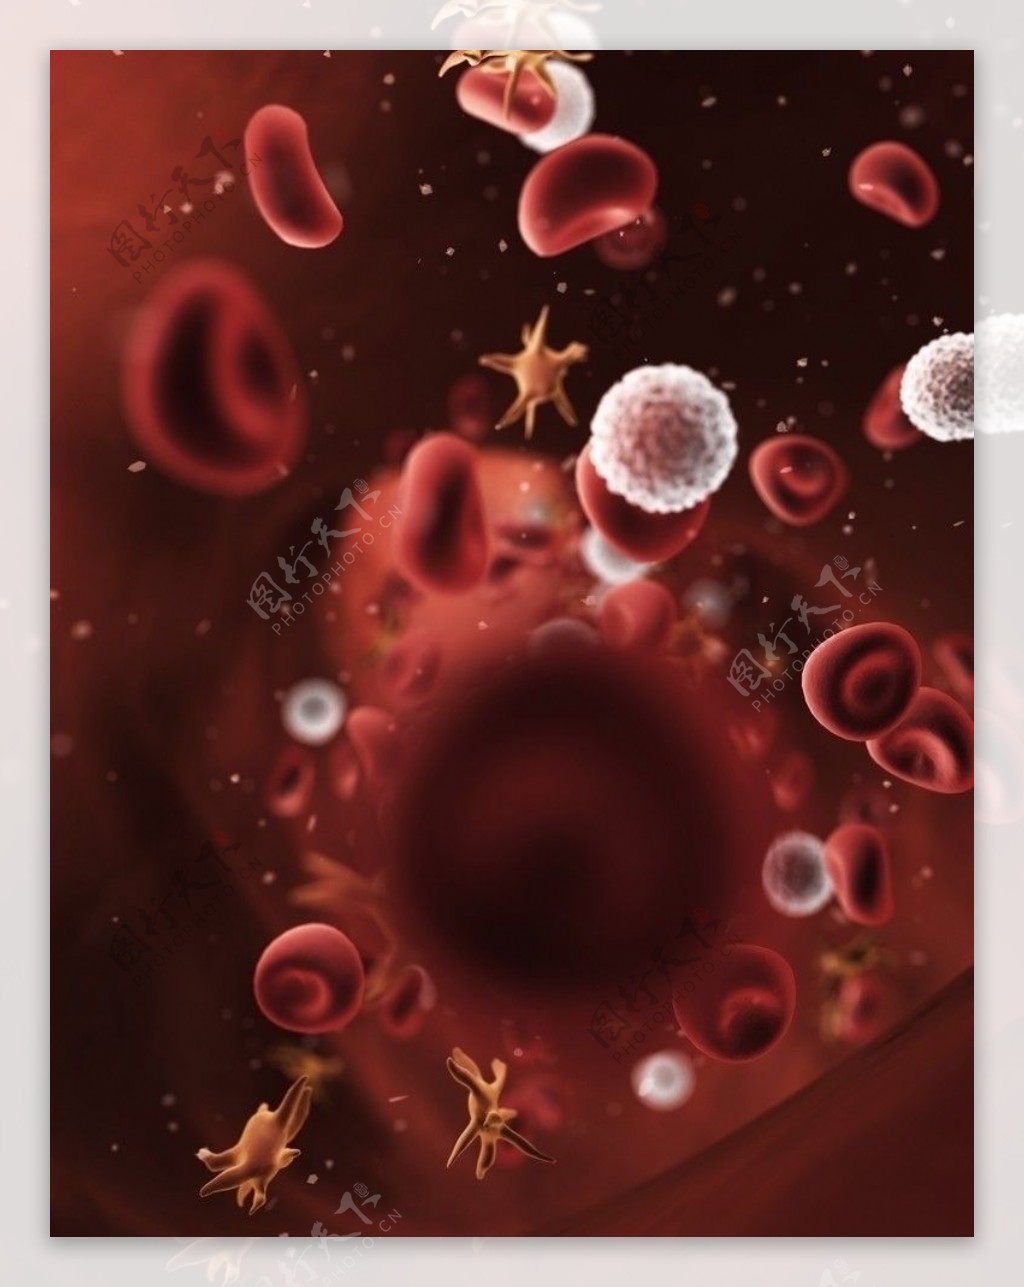 血细胞图片